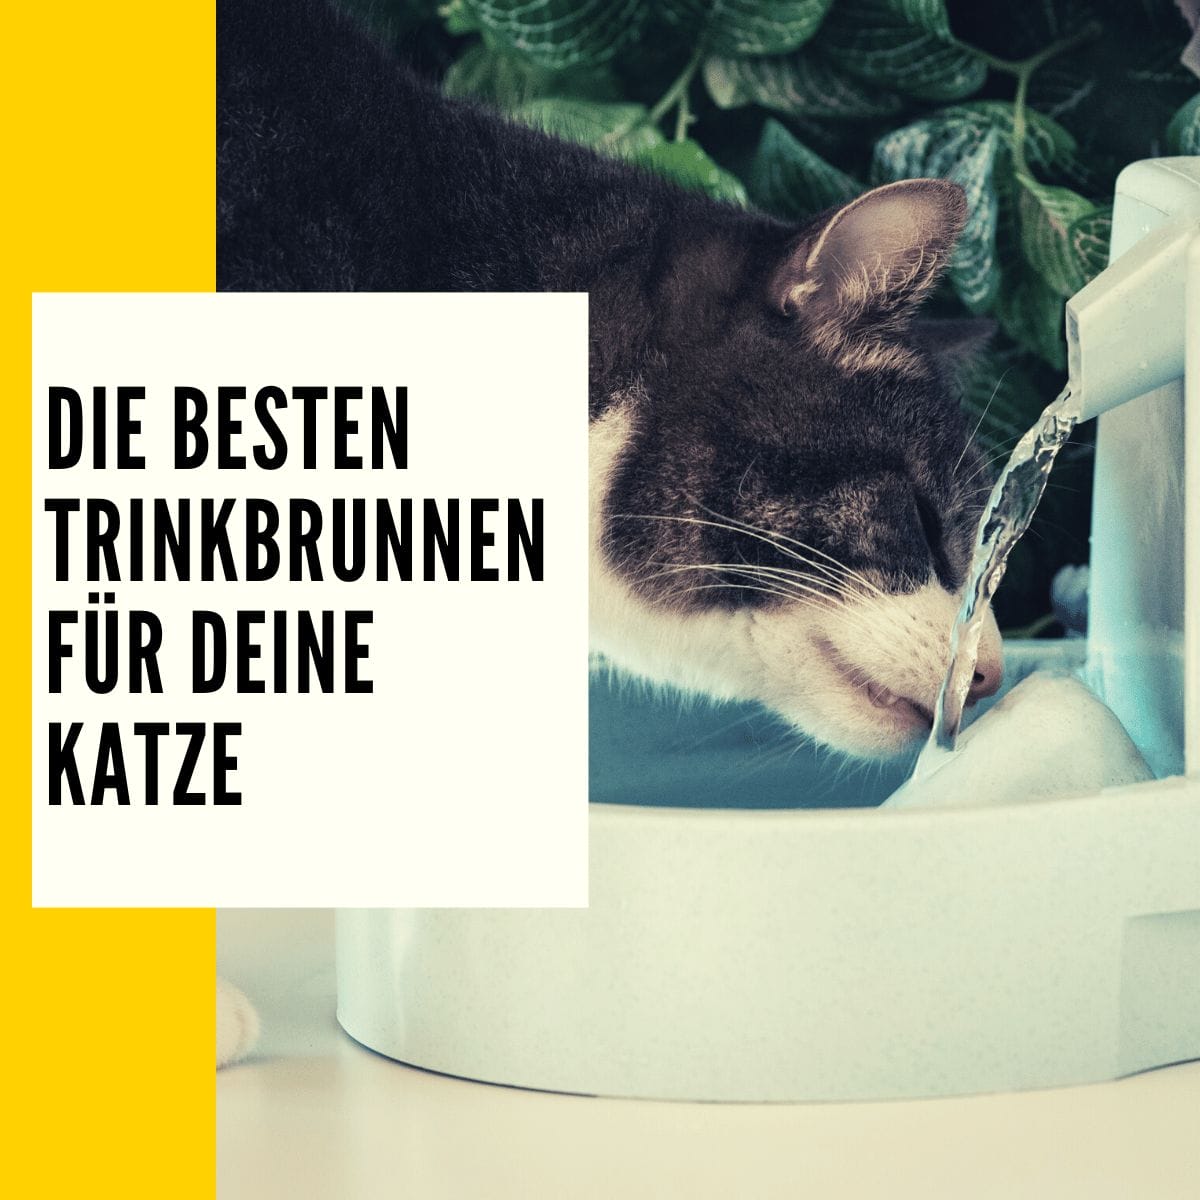 Trinkbrunnen Katze: Die besten Trinkbrunnen im direkten Vergleich!